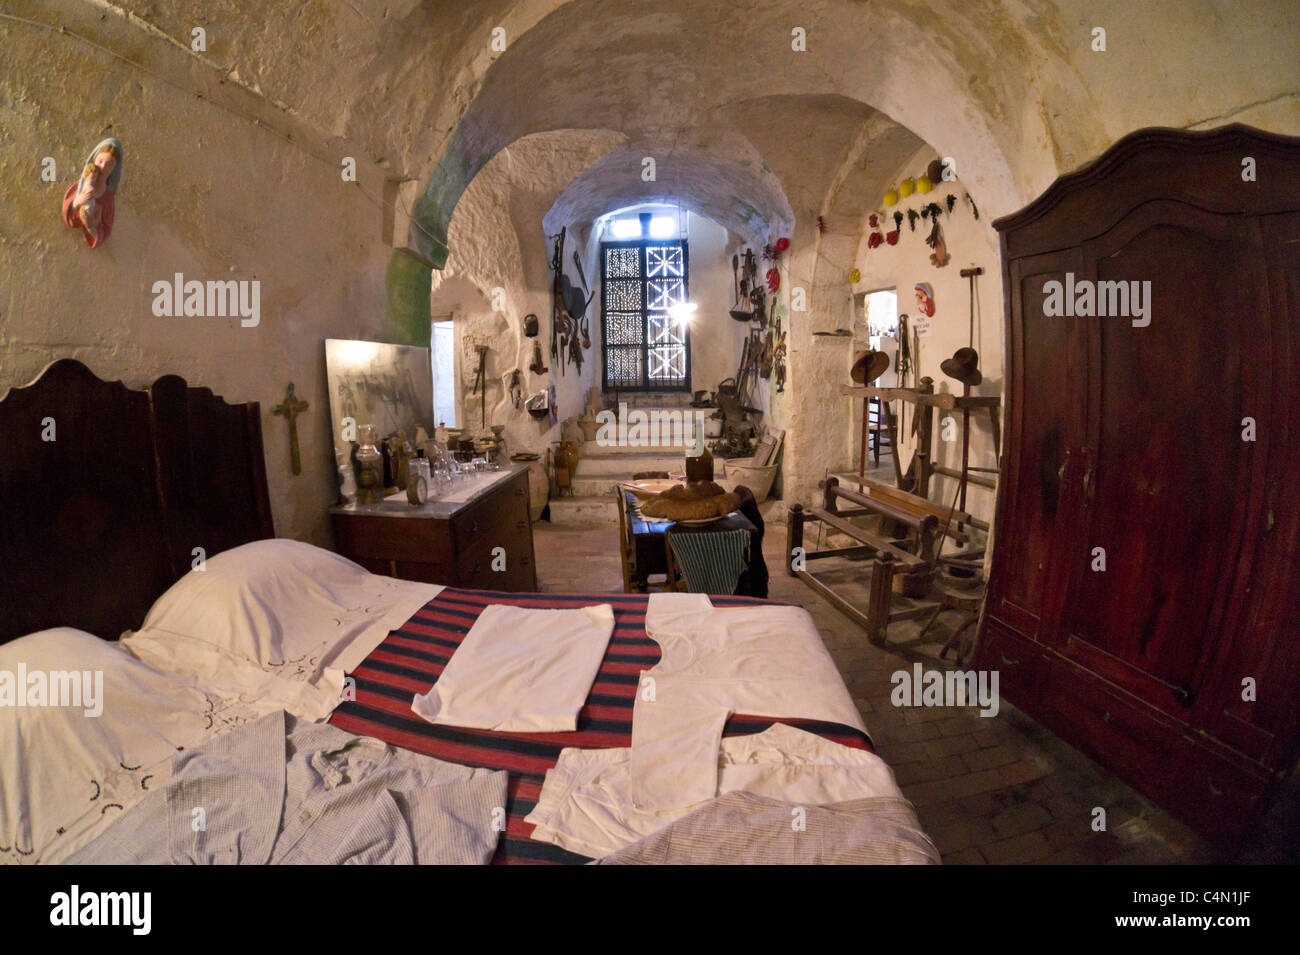 Italy - historic cave house in the Sassi Caveoso of Matera. Casa Grotta di Casalnuevo. High bed, linen, wardrobe and loom. Stock Photo